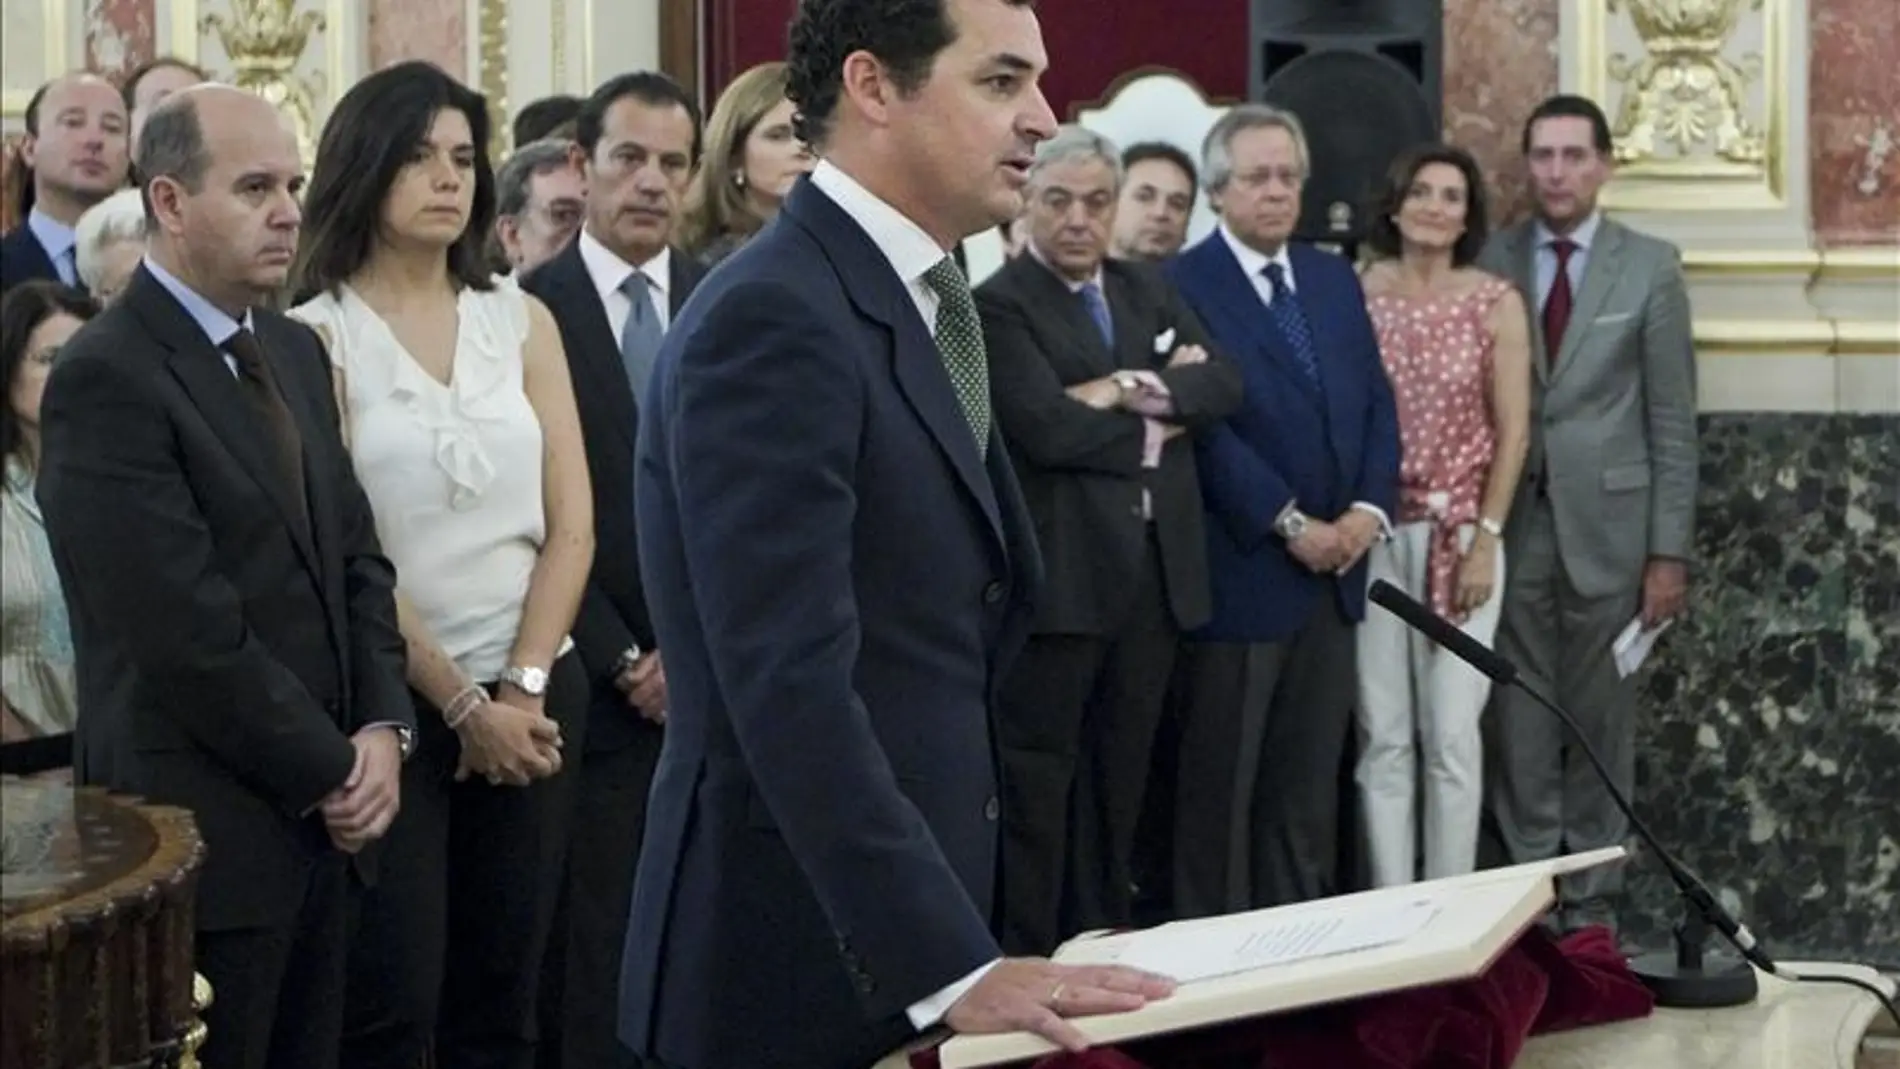 González-Echenique jurando su cargo como presidente de RTVE en el Congreso